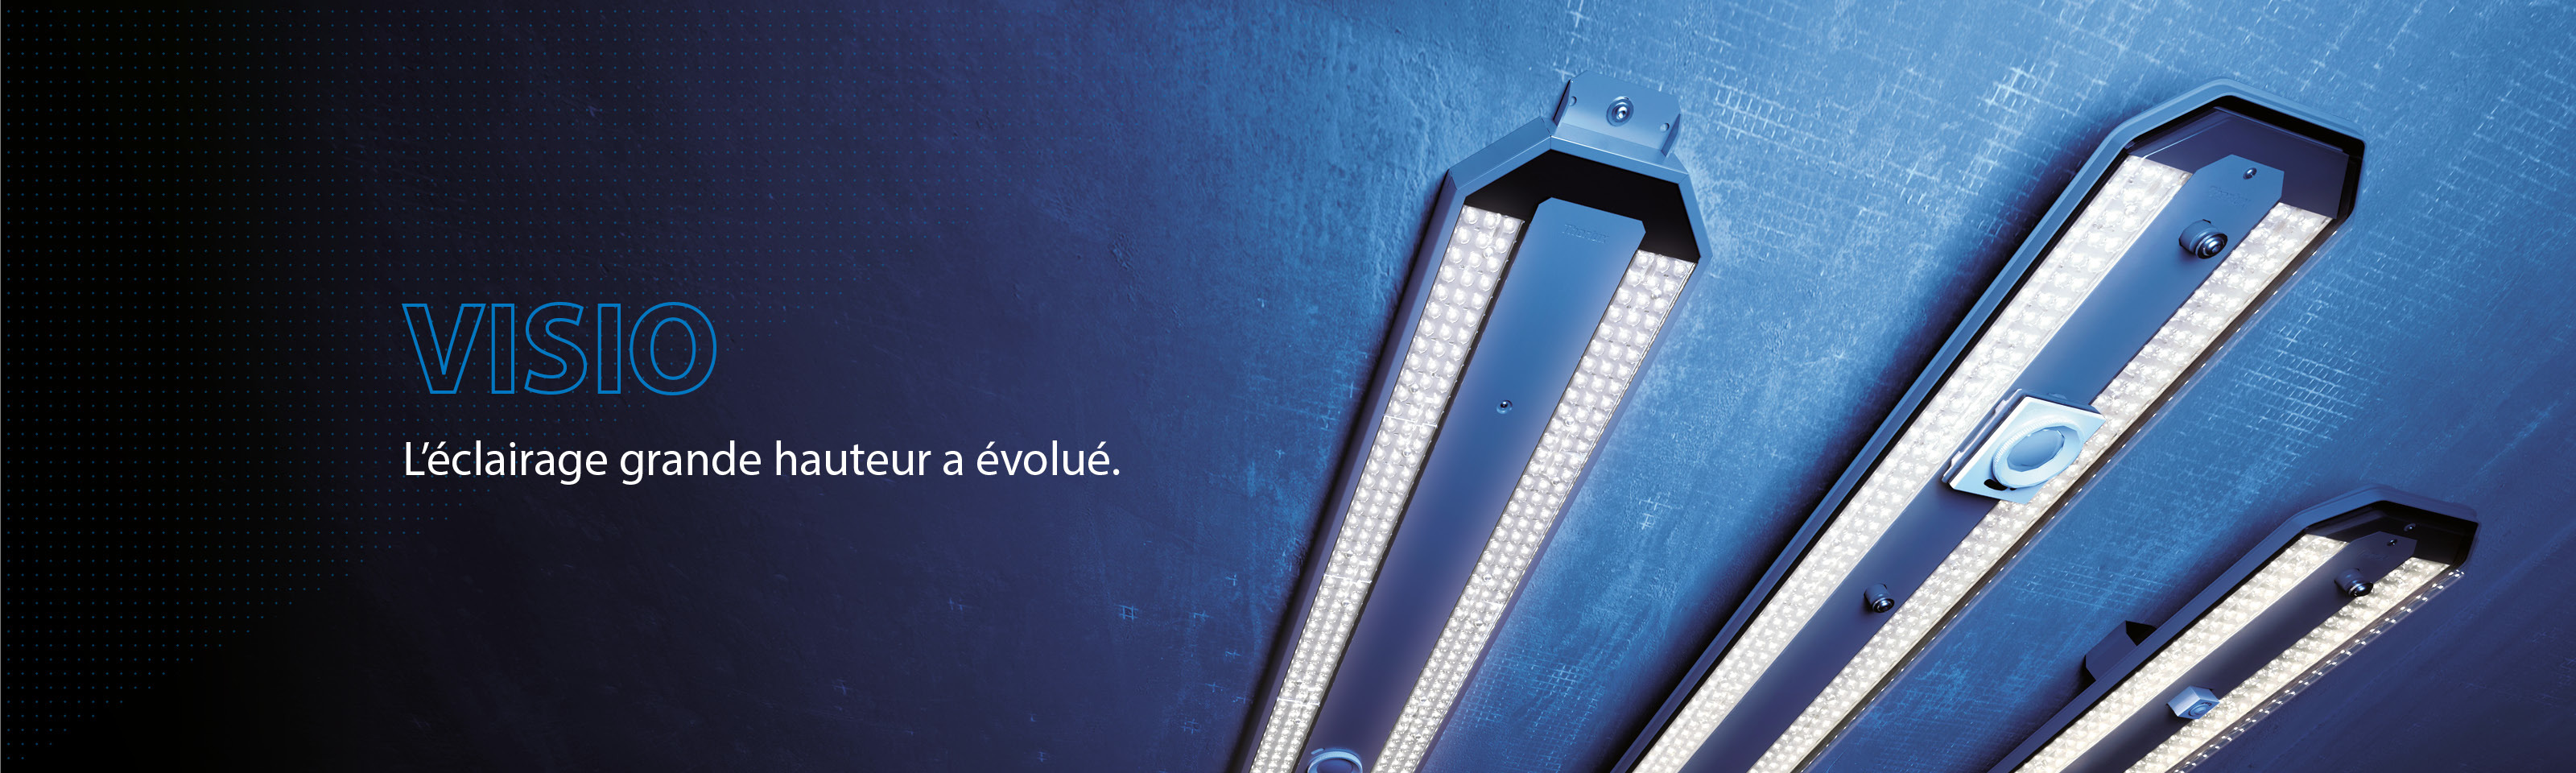 Visio - Luminaires LED à performance exceptionnelle et à installation rapide